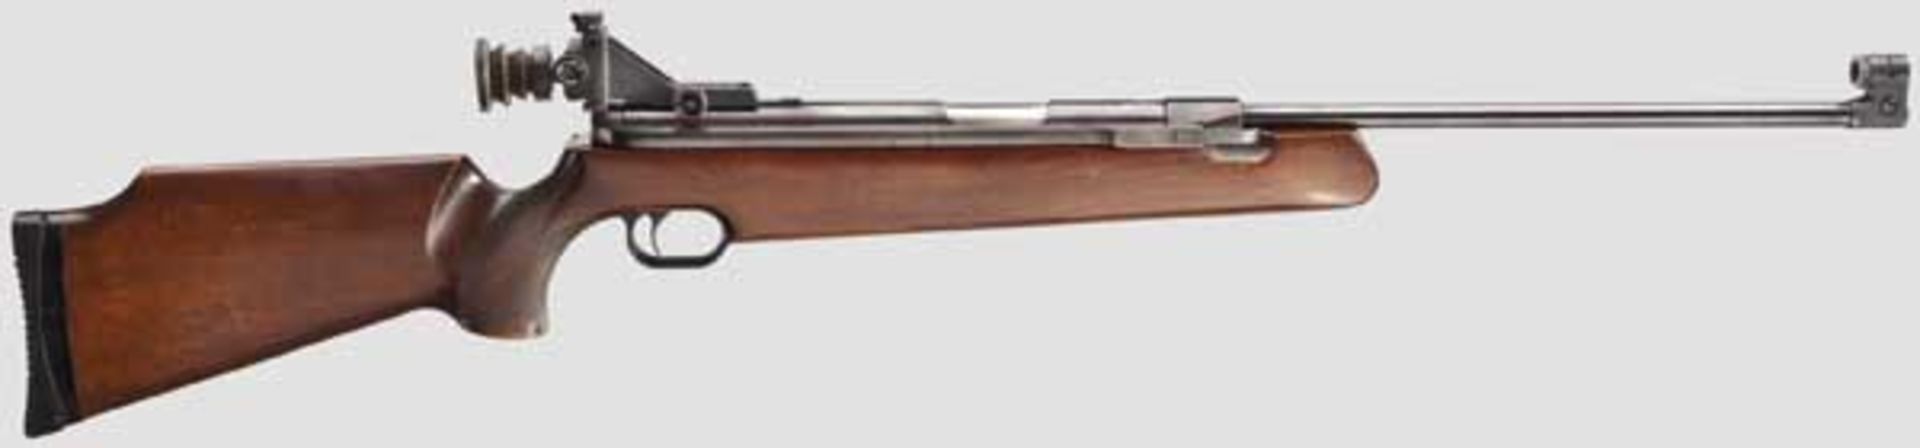 Match-Luftgewehr Feinwerkbau Mod. 150    Kal. 4,5 mm, Nr. 23675. Lauf mit Haarzügen, Länge 50 cm.